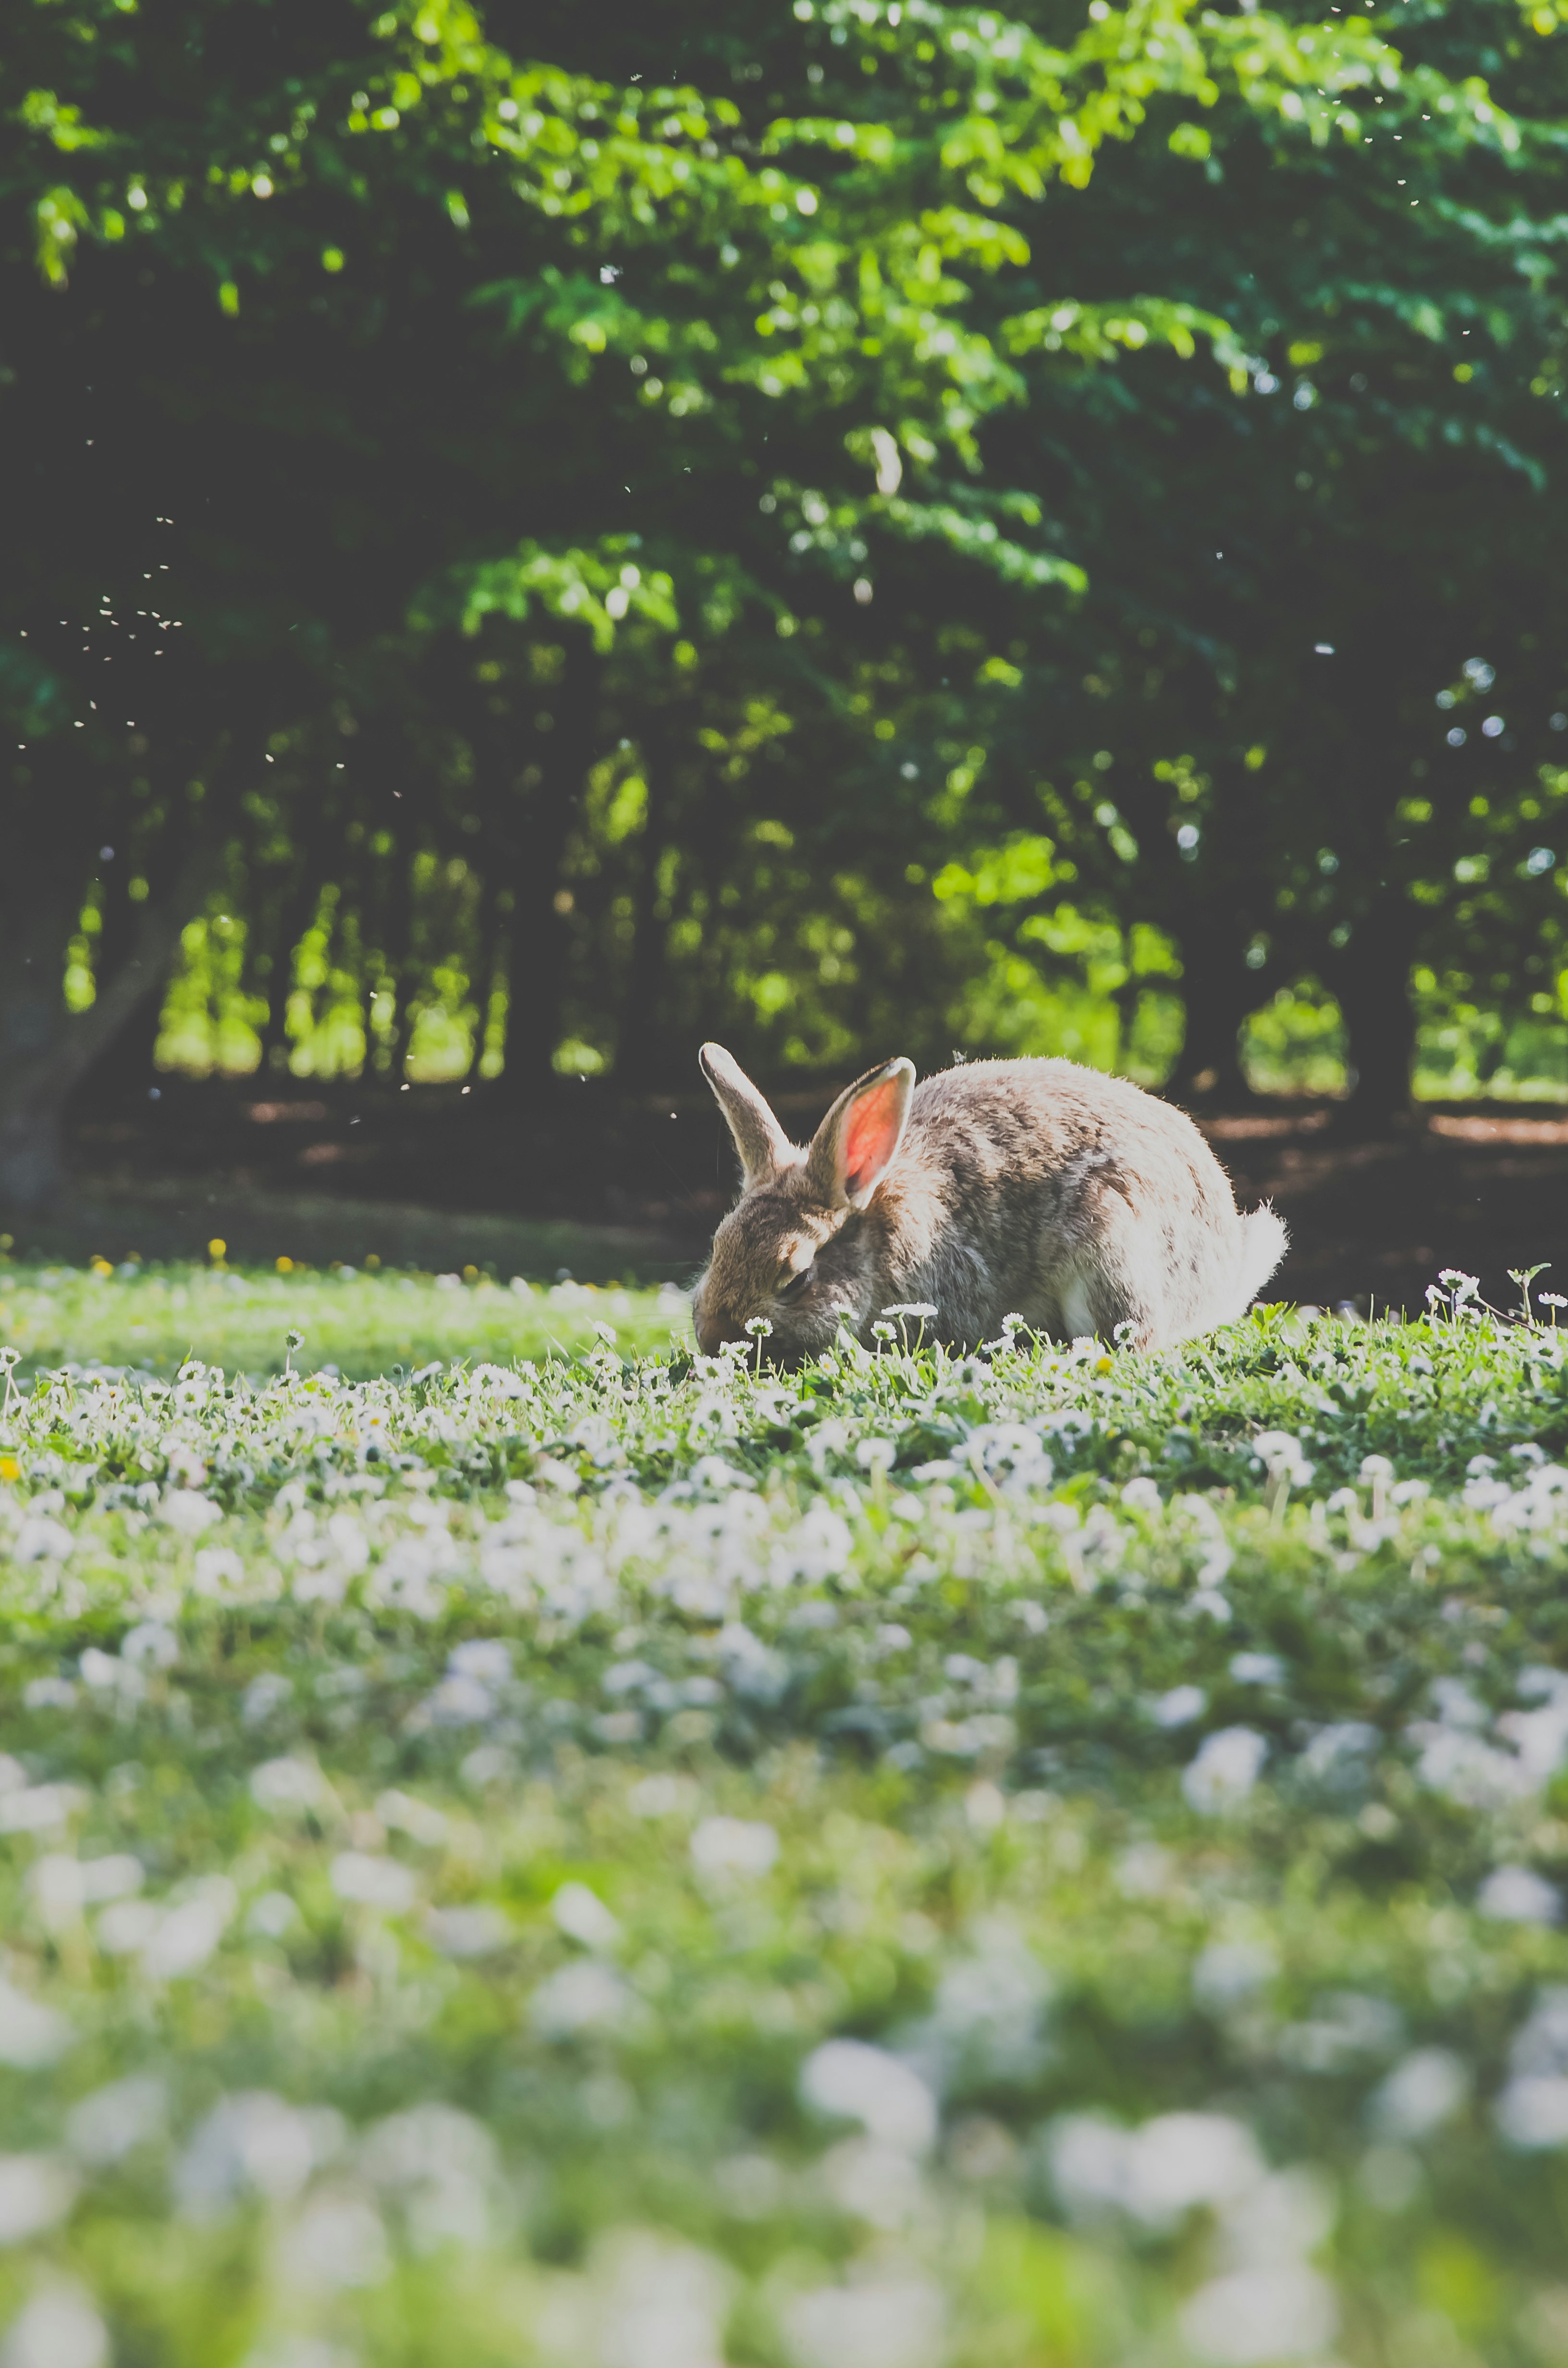 🐰 🐇 A rabbit eating dinner.